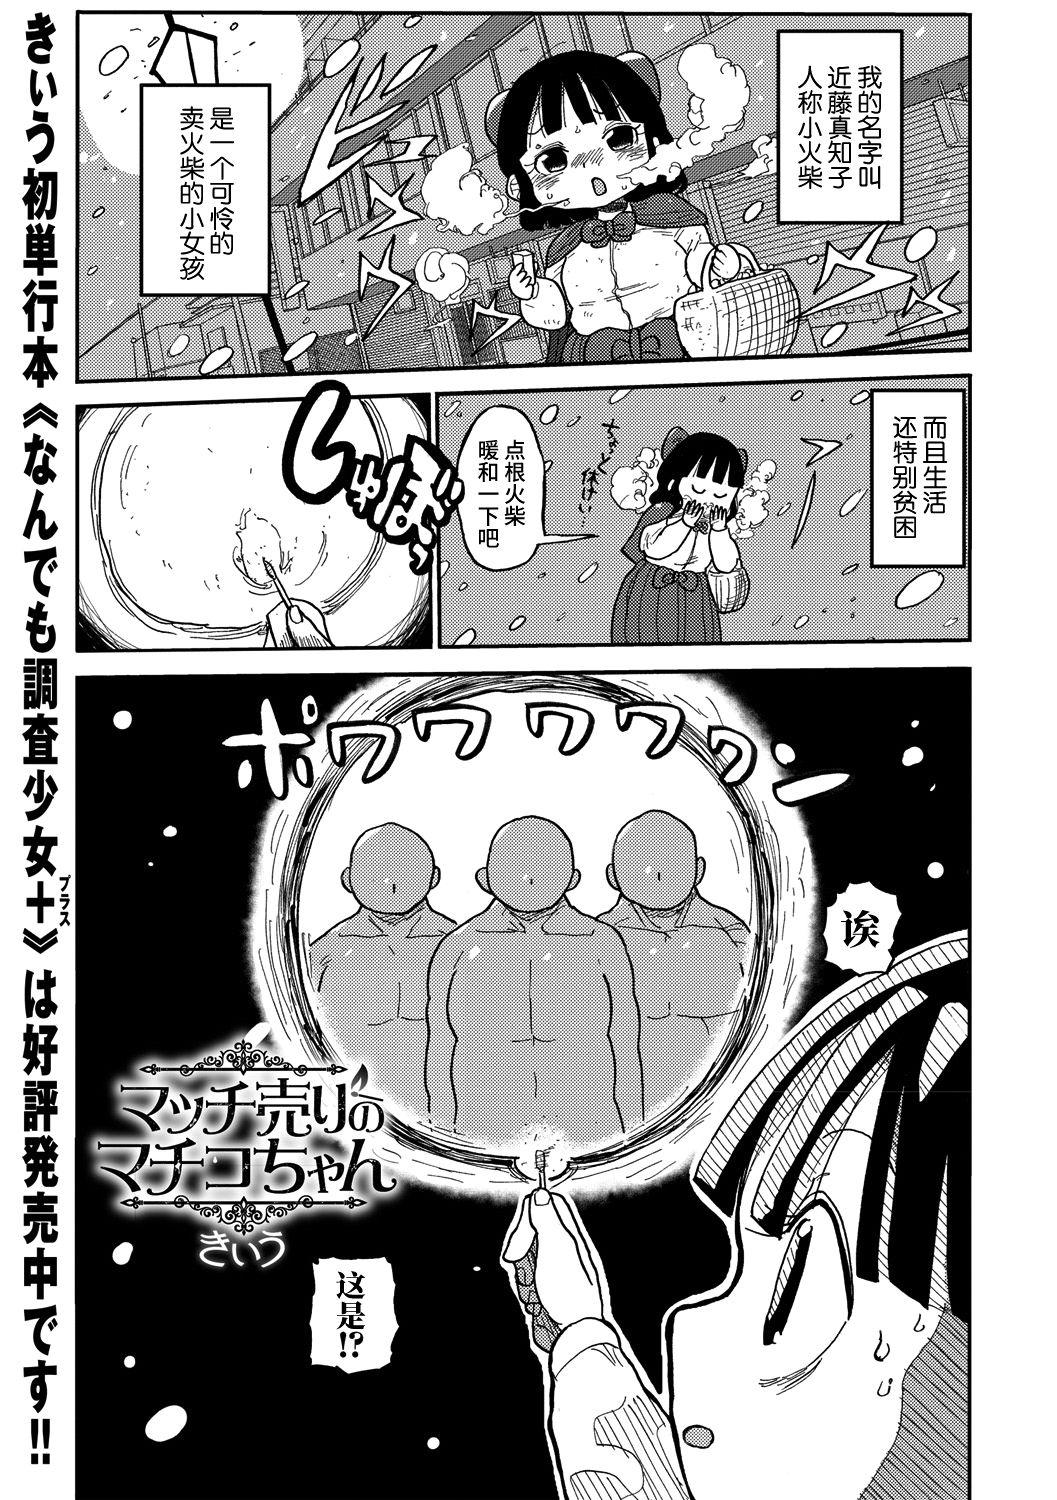 Teasing Match Uri no Machiko-chan Asstomouth - Page 2